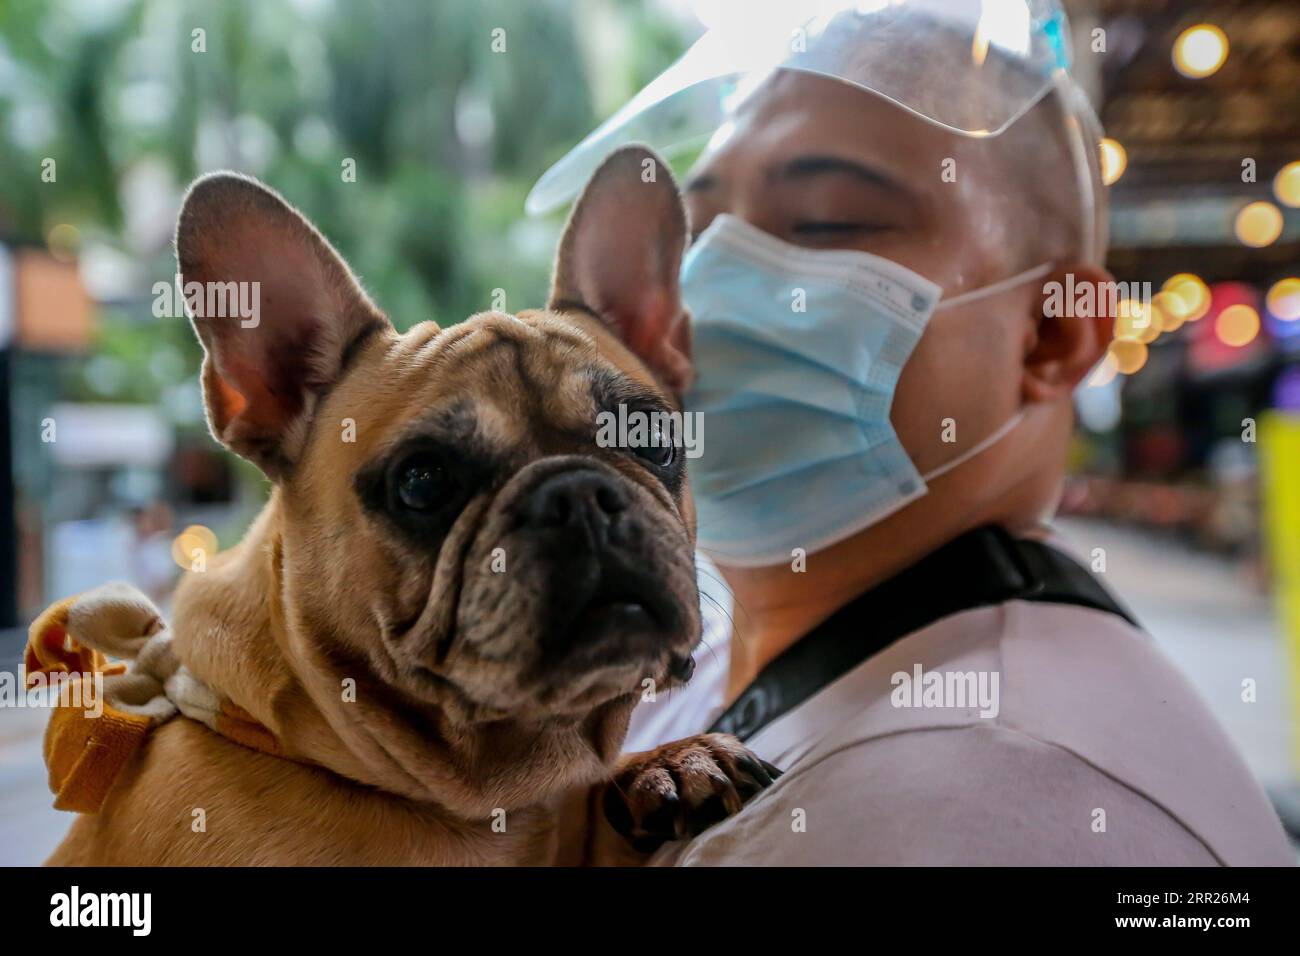 201004 -- MANILA, 4 ottobre 2020 -- Un cane domestico è trasportato da un uomo mentre guarda una benedizione di un animale domestico drive-thru a Manila, nelle Filippine, il 4 ottobre 2020. La benedizione degli animali domestici drive-thru si svolge in mezzo alla pandemia di COVID-19 per celebrare la giornata mondiale degli animali che si celebra ogni anno il 4 ottobre. FILIPPINE-MANILA-WORLD ANIMAL-DRIVE-THRU PET BLESSING ROUELLEXUMALI PUBLICATIONXNOTXINXCHN Foto Stock